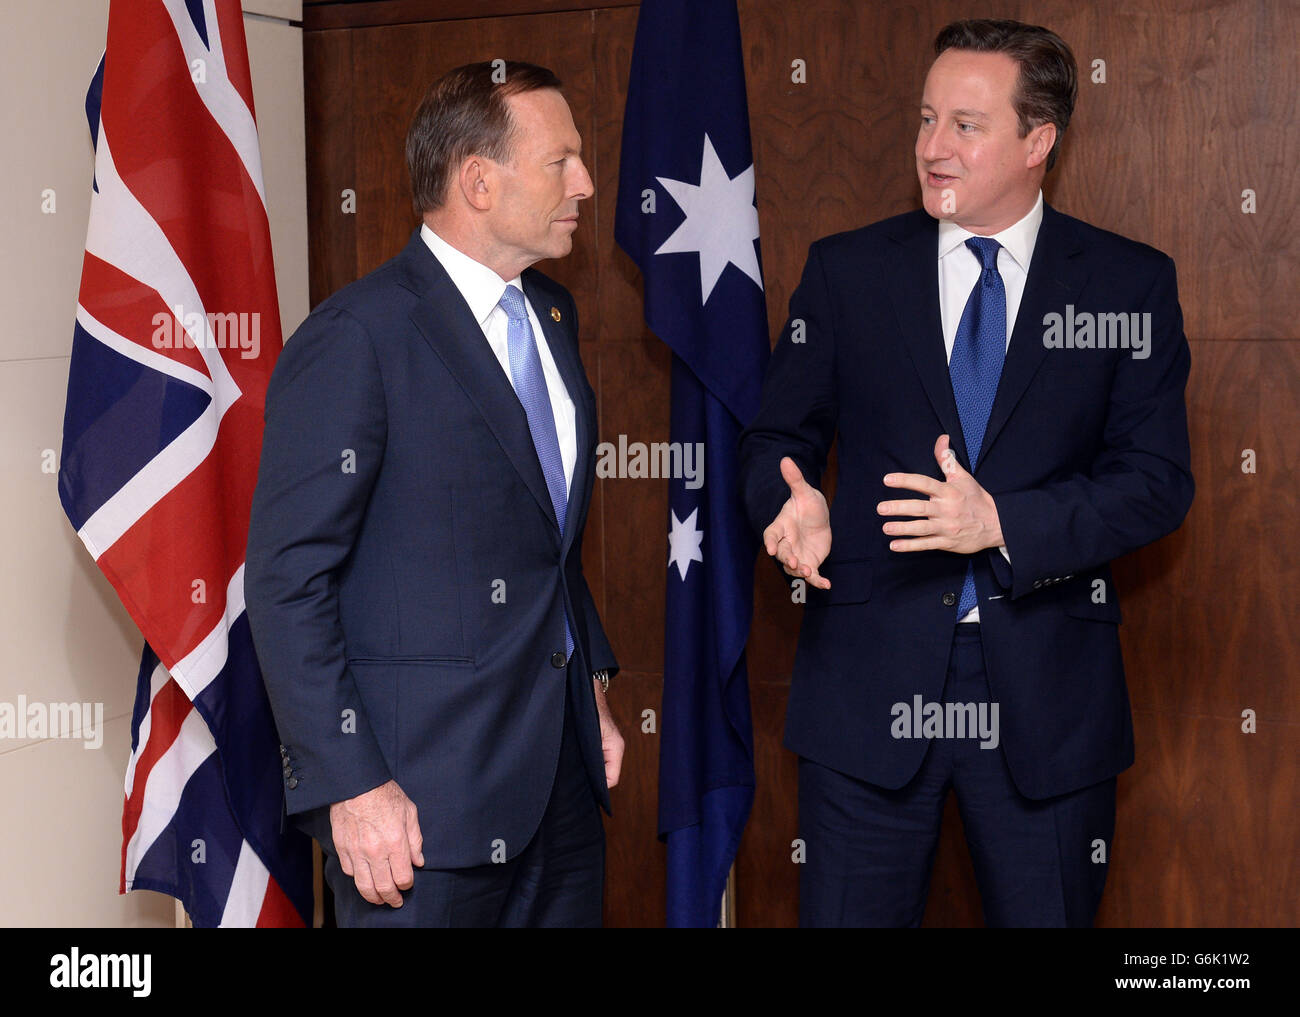 Il primo ministro David Cameron incontra il primo ministro australiano Tony Abbott all'Alto Commissariato britannico nella capitale dello Sri Lanka Colombo, dove i due leader partecipano all'incontro dei capi di governo del Commonwealth. Foto Stock